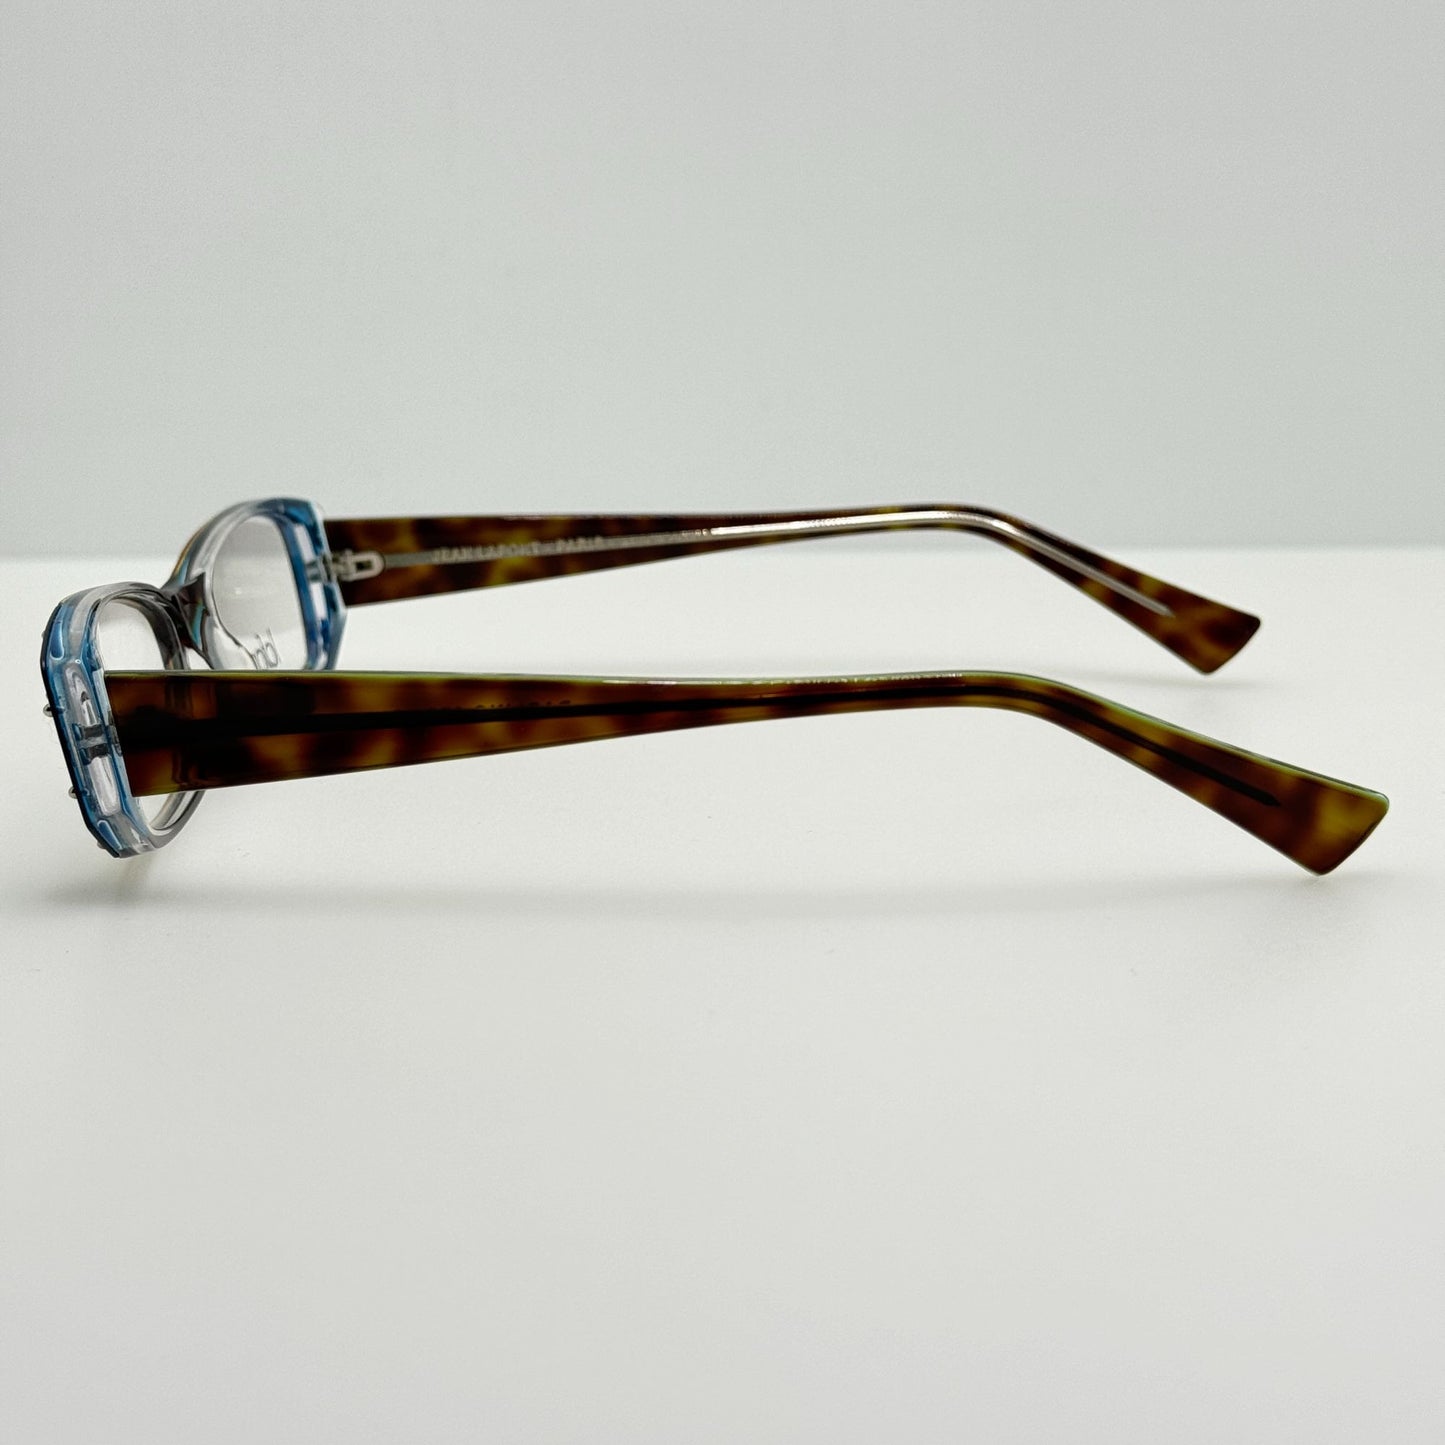 Jean Lafont Eyeglasses Eye Glasses Frames Darling 675 51-15-142